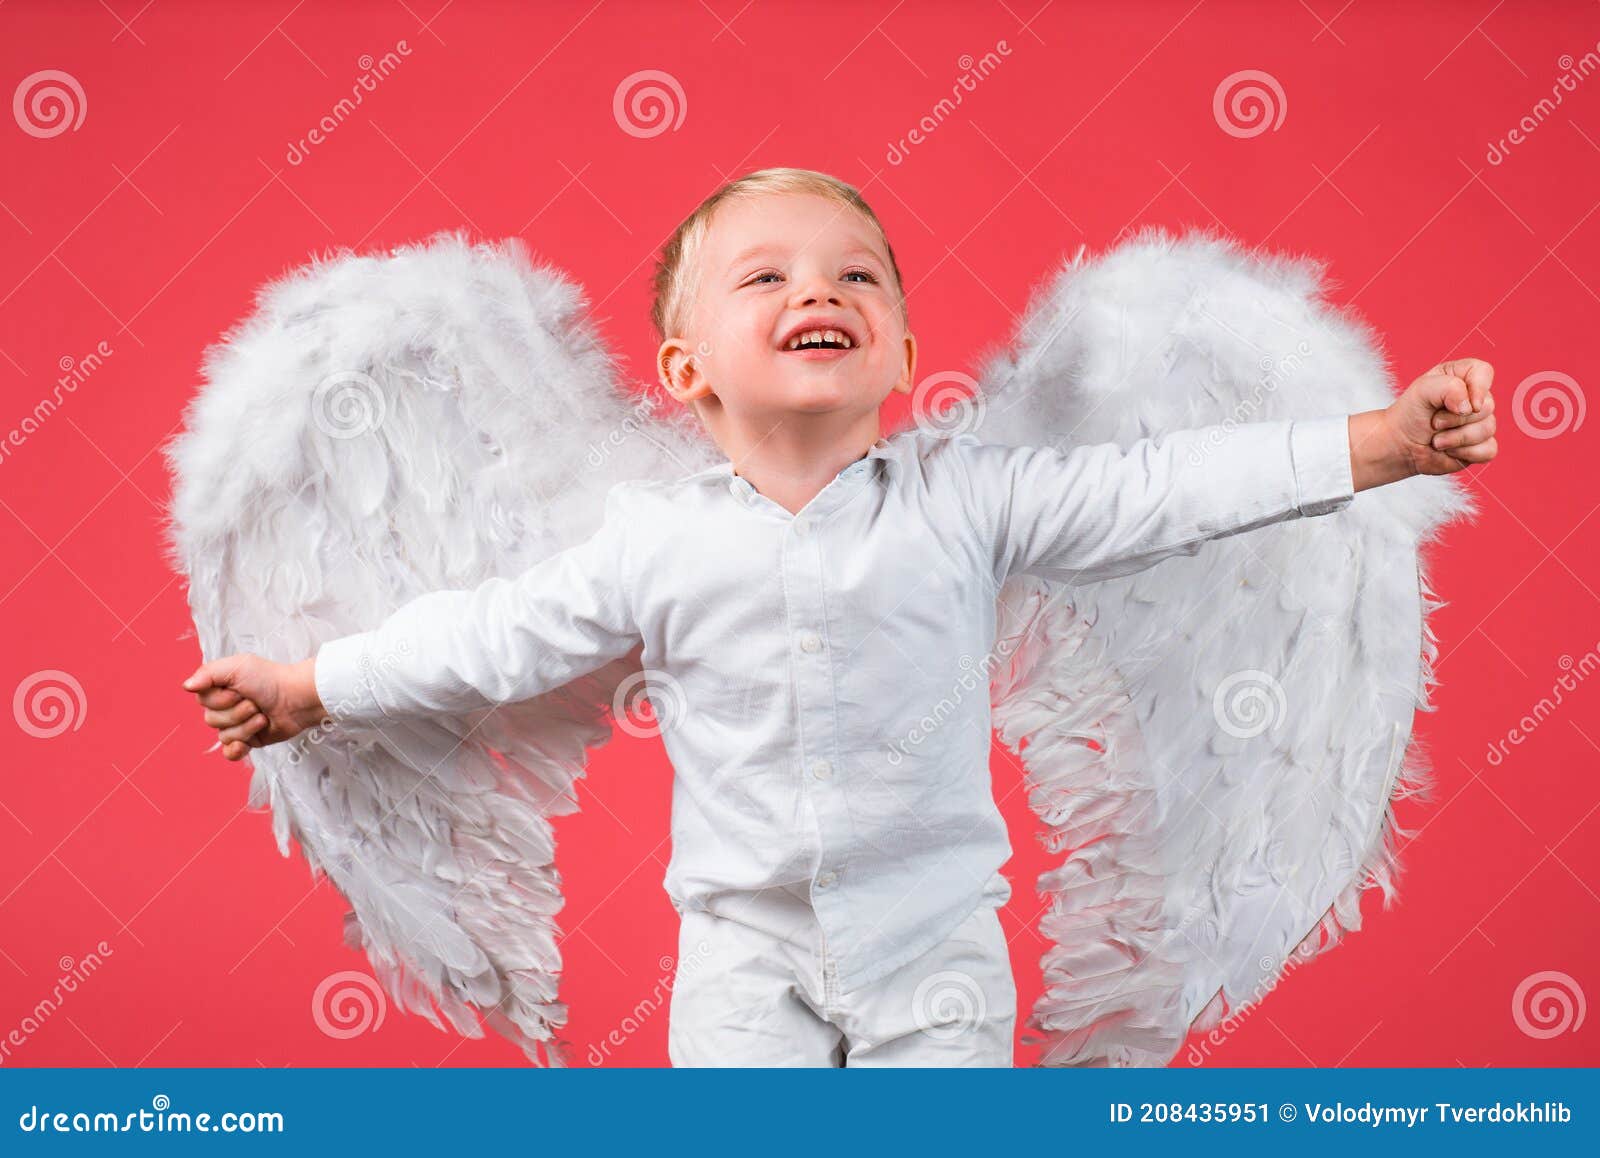 天使翅膀的天使小男孩. 库存图片. 图片 包括有 天堂, 子项, 幸福, 想象力, 概念, 圆形露天剧场 - 202967065